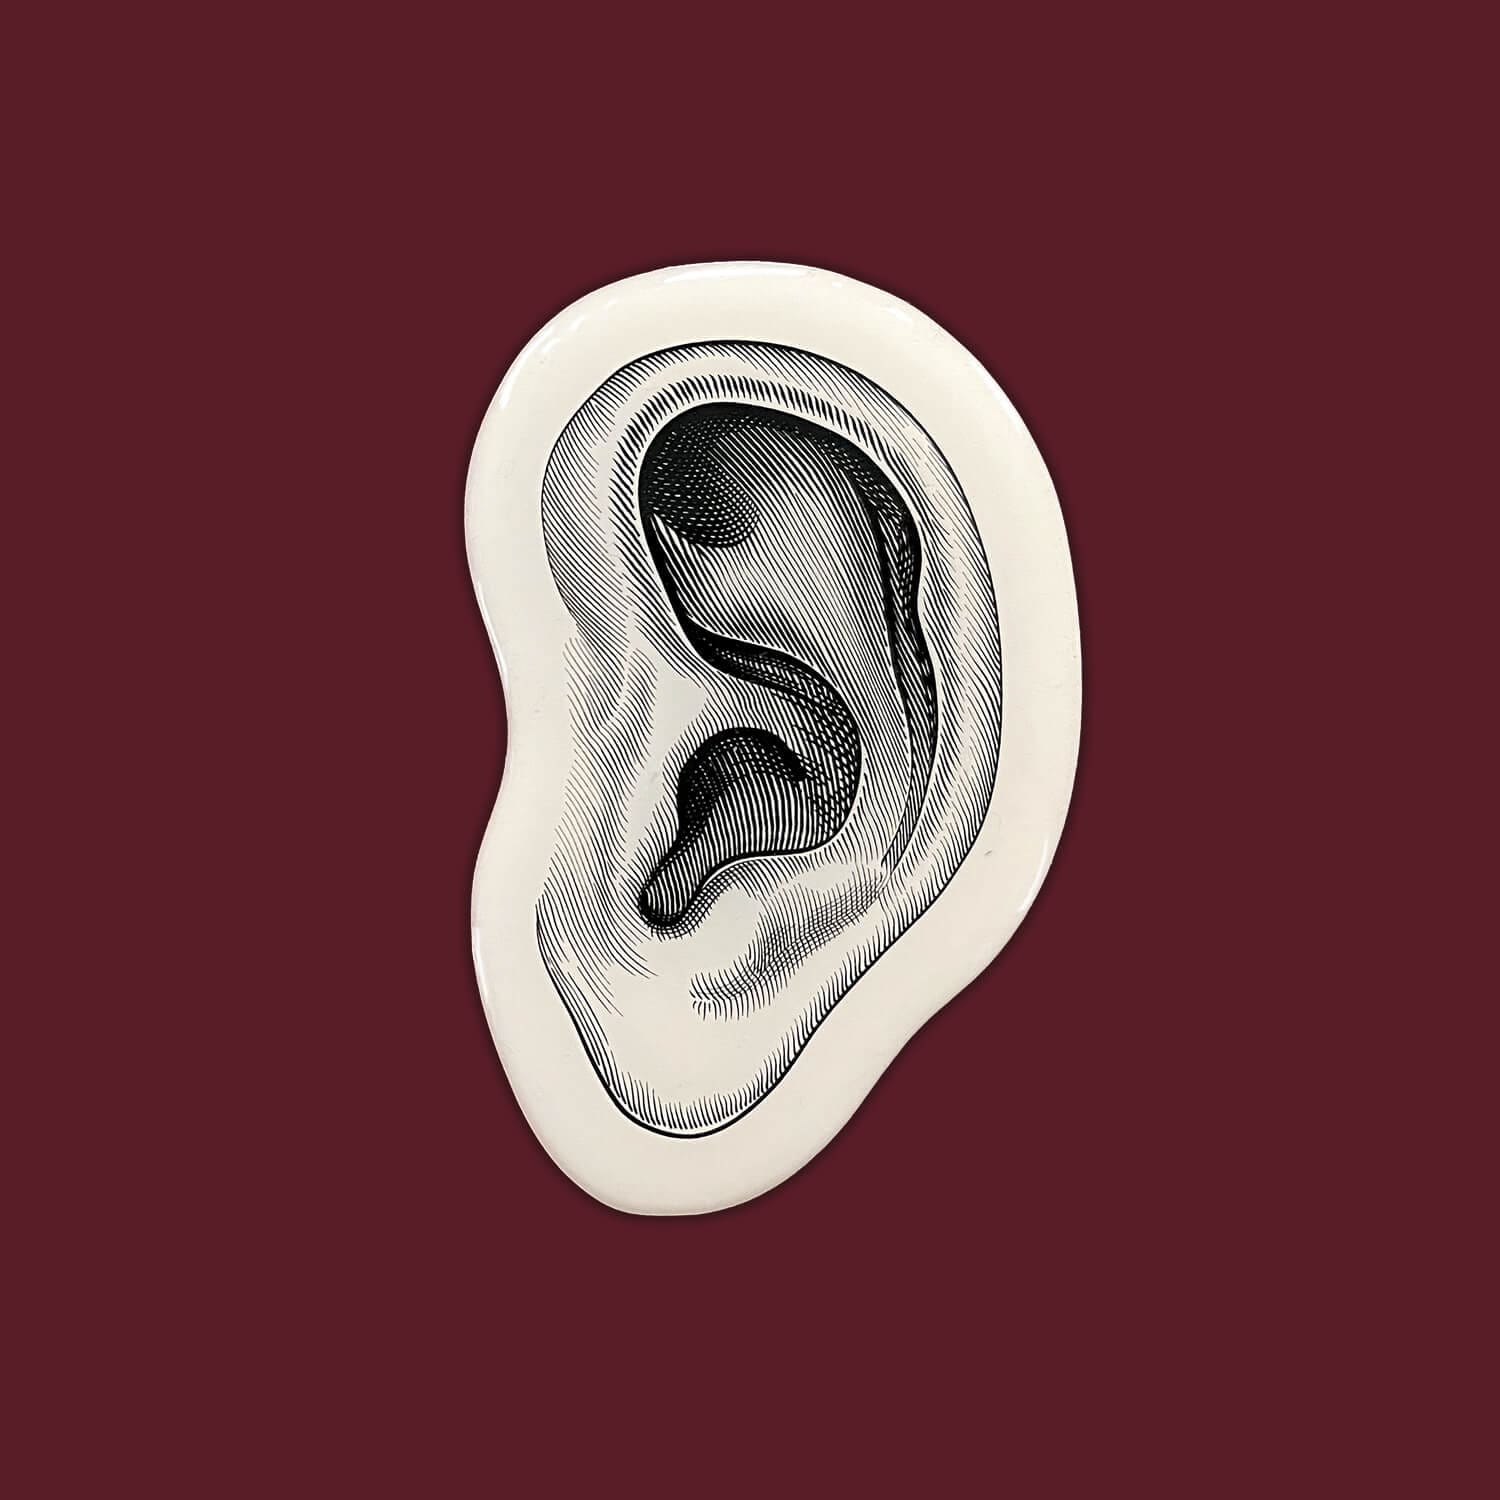 l'oreille illustrée facon gravure pour la cite du vin de bordeaux, design ichetkar